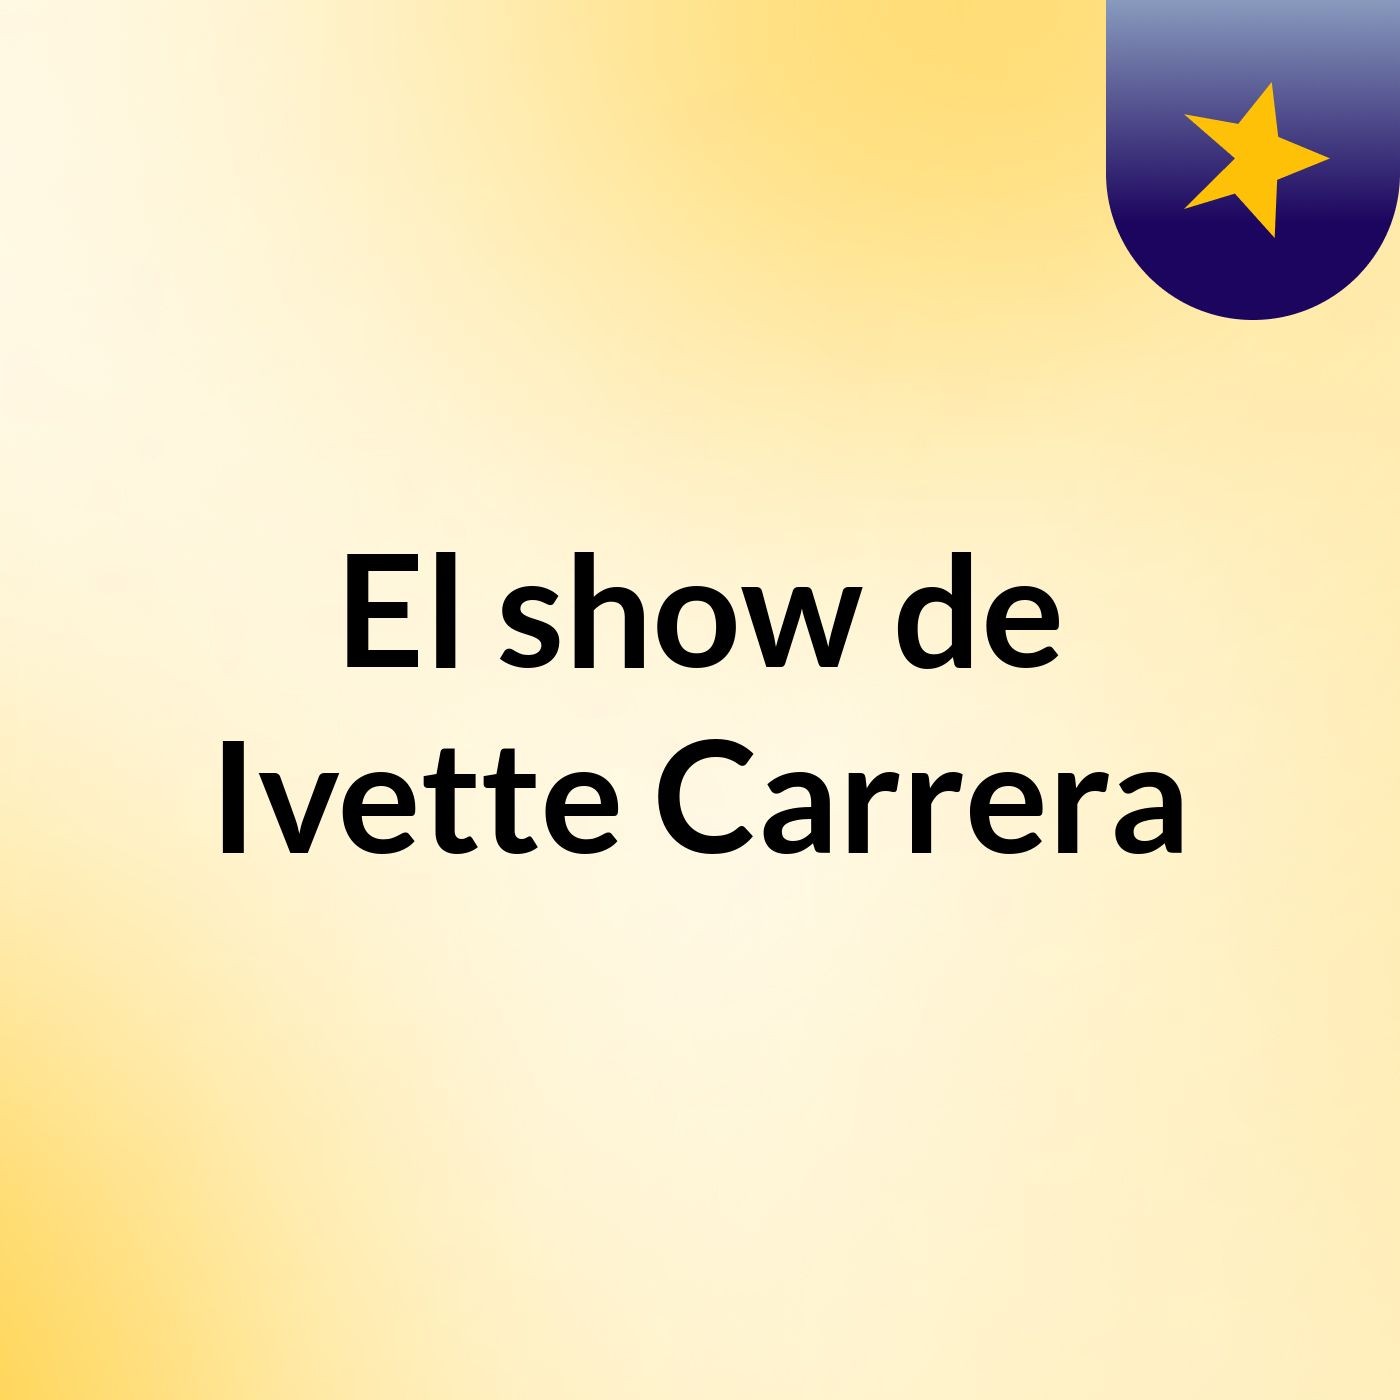 El show de Ivette Carrera